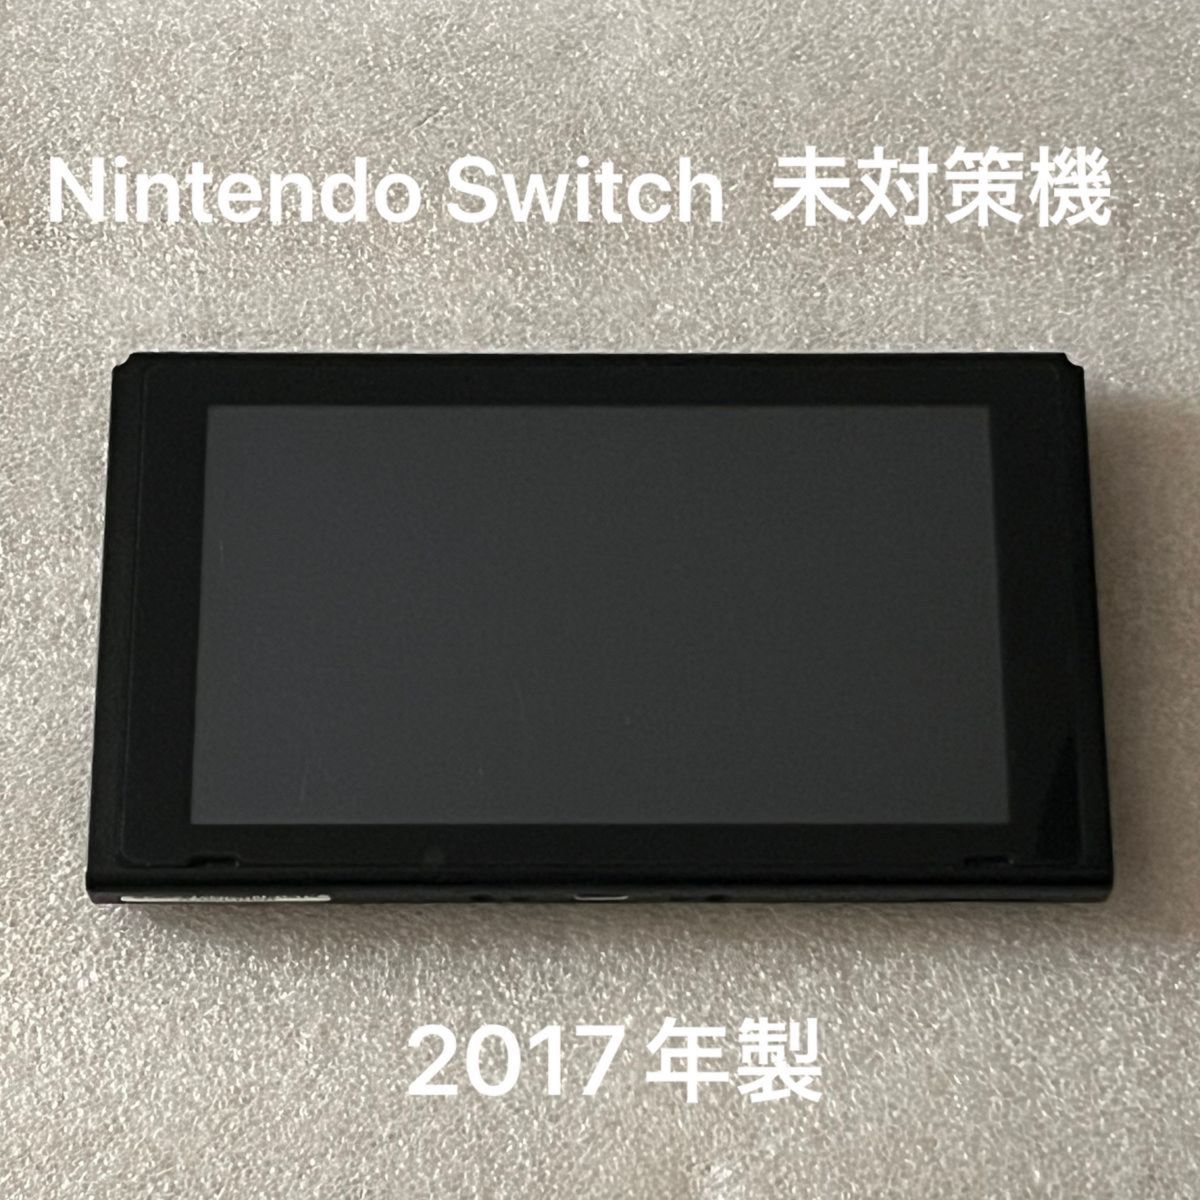 ニンテンドー Switch 2017年製 本体 未対策機